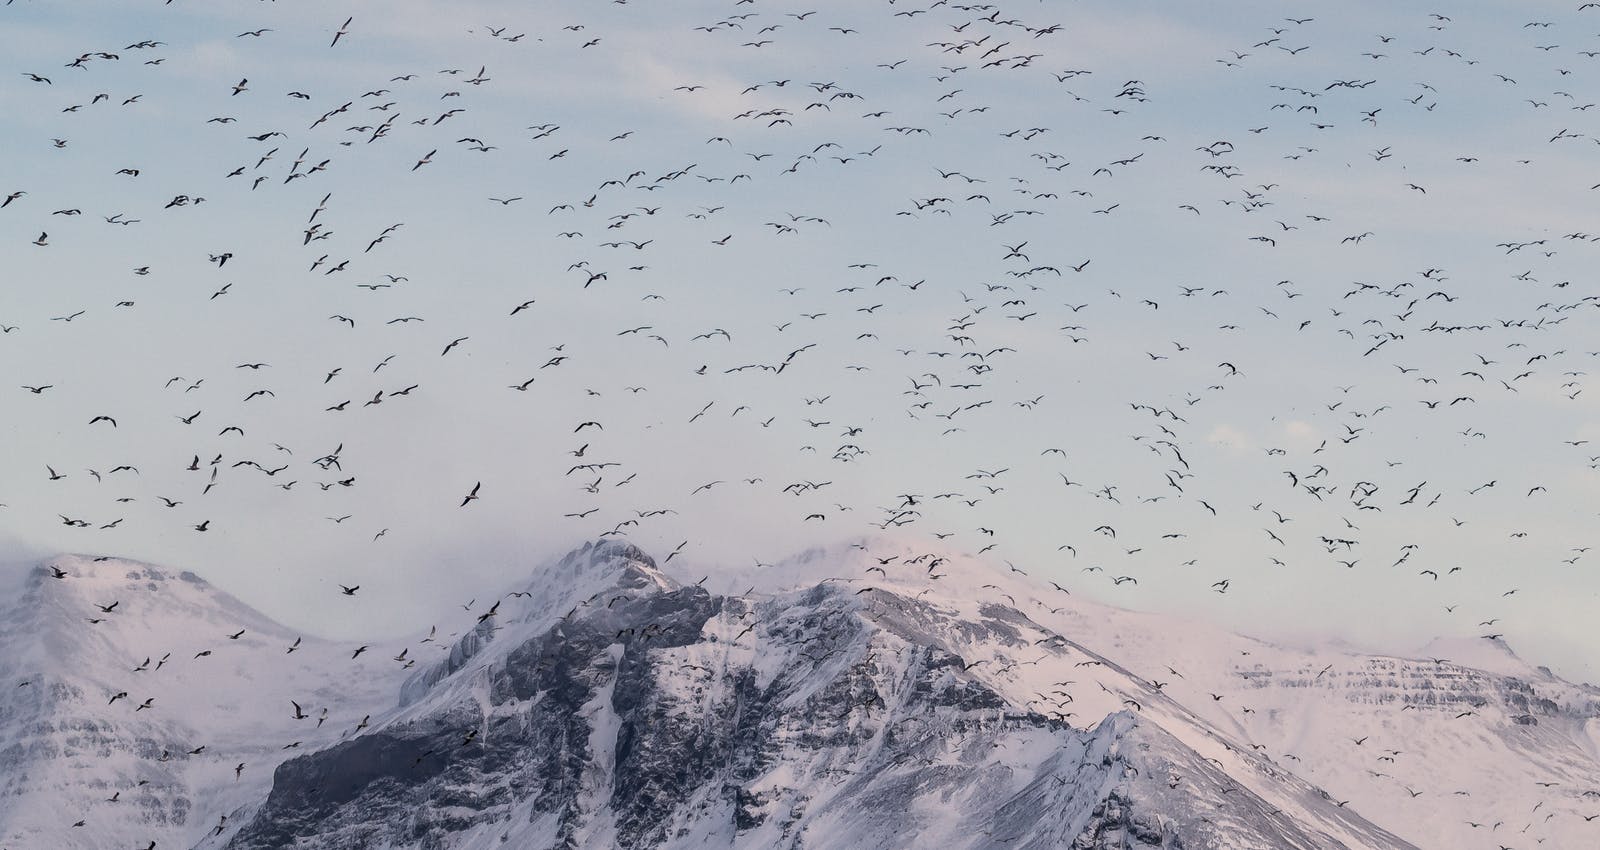 Flock of Black-Headed Gull